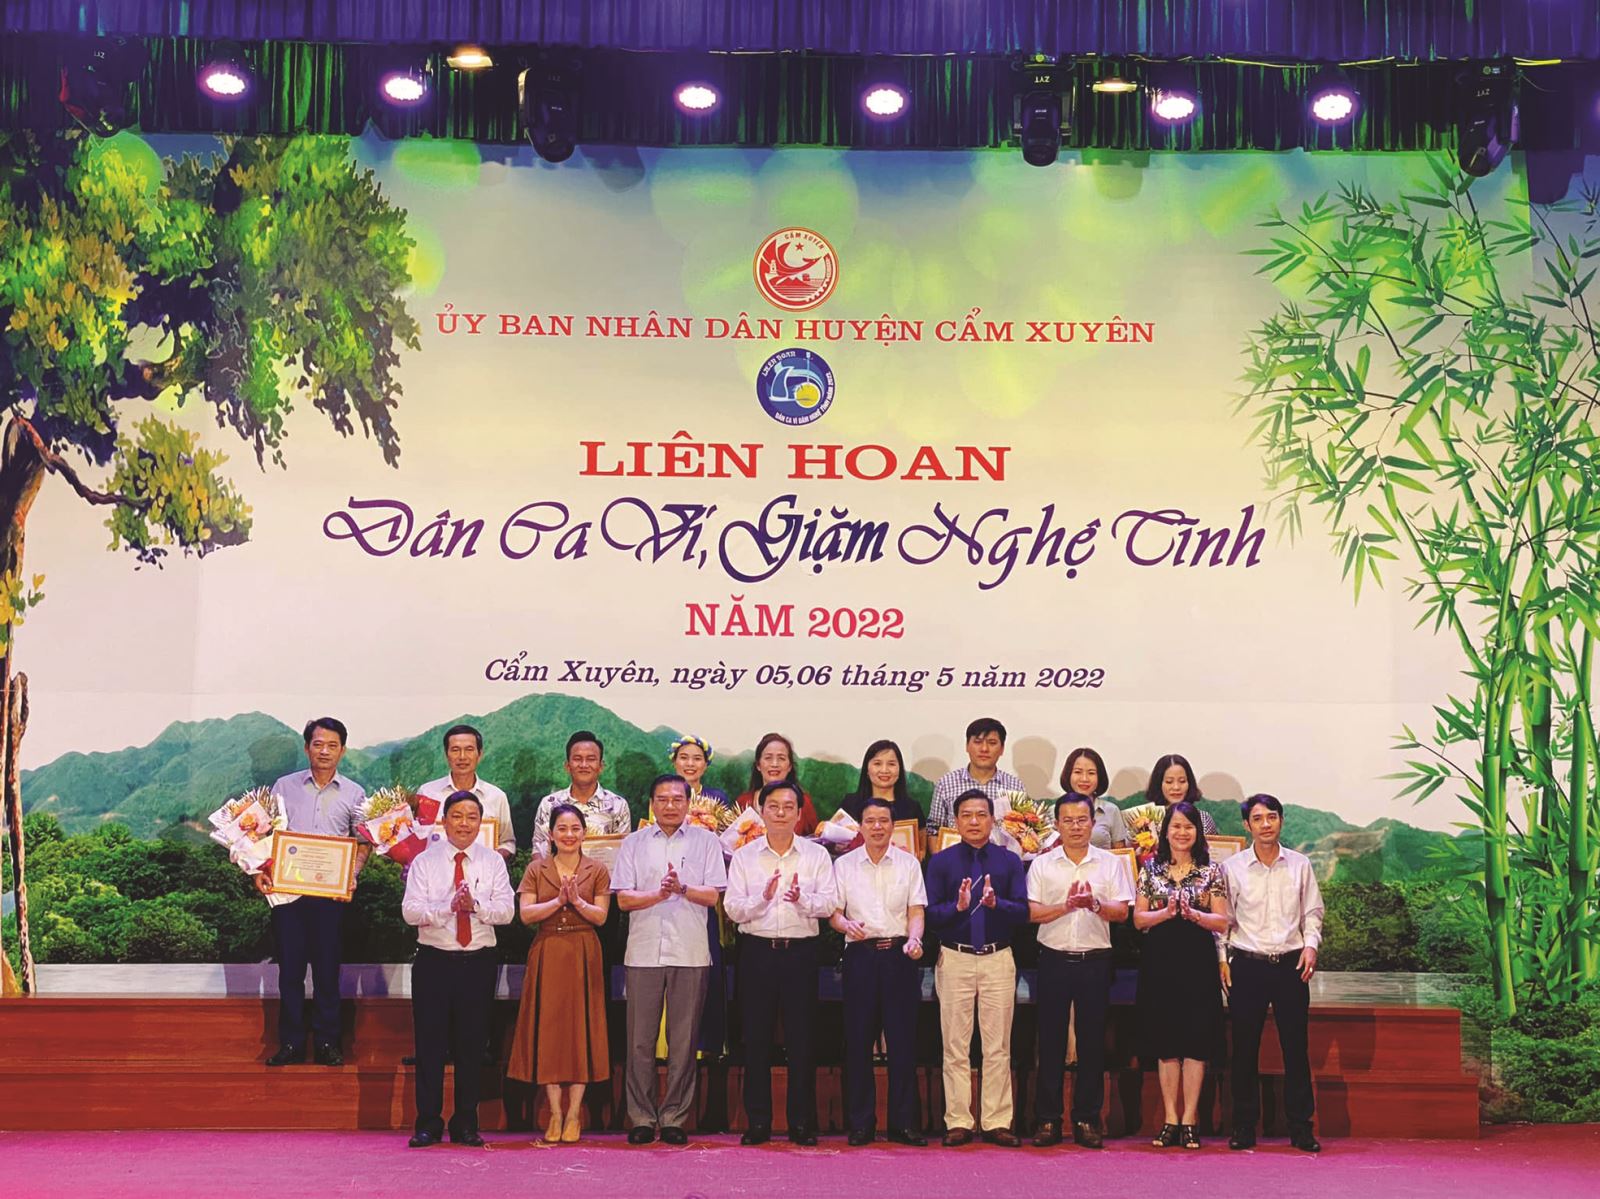 HÀ TĨNH: Huyện Cẩm Xuyên tổ chức thành công Liên hoan các Câu lạc bộ Dân ca Ví Giặm Nghệ Tĩnh năm 2022